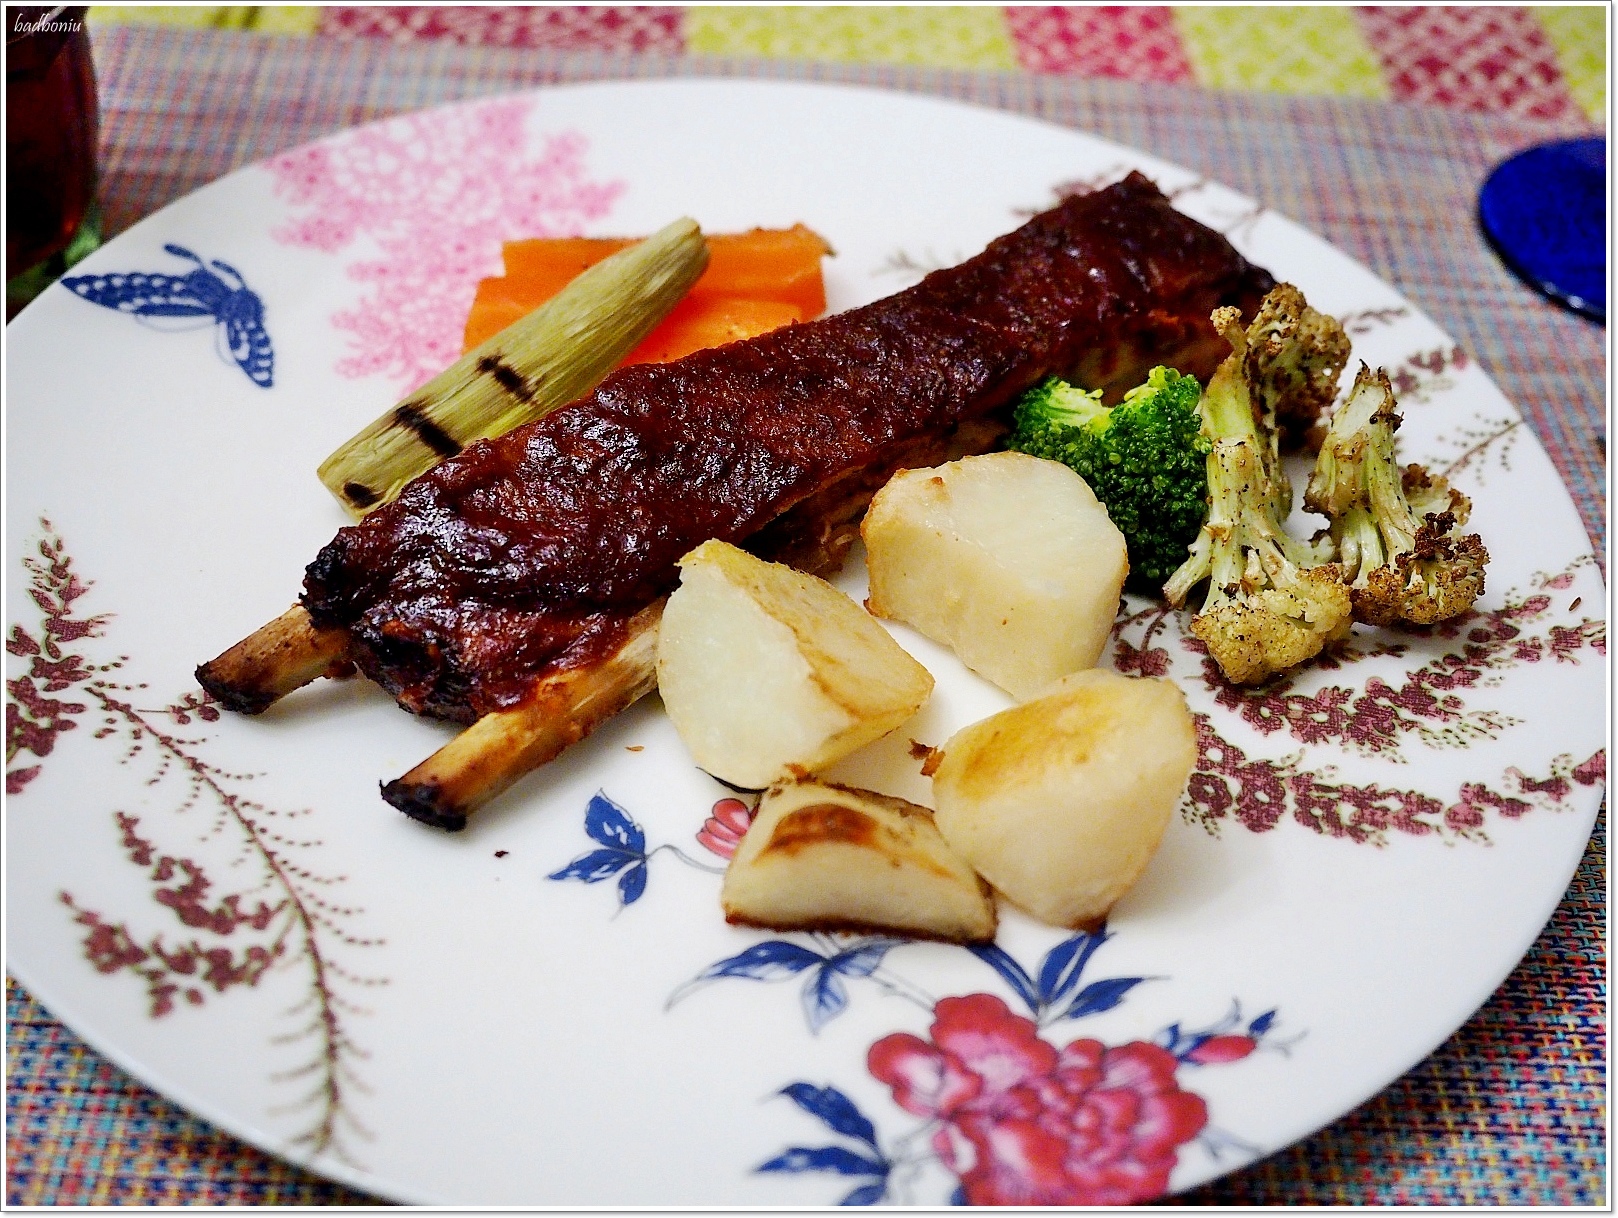 【食】【花蓮】迷路私宅料理 Ian's Table | 壽豐鄉林間的迷路美食 - 花蓮、台東 - 壞波妞の旅行食踨